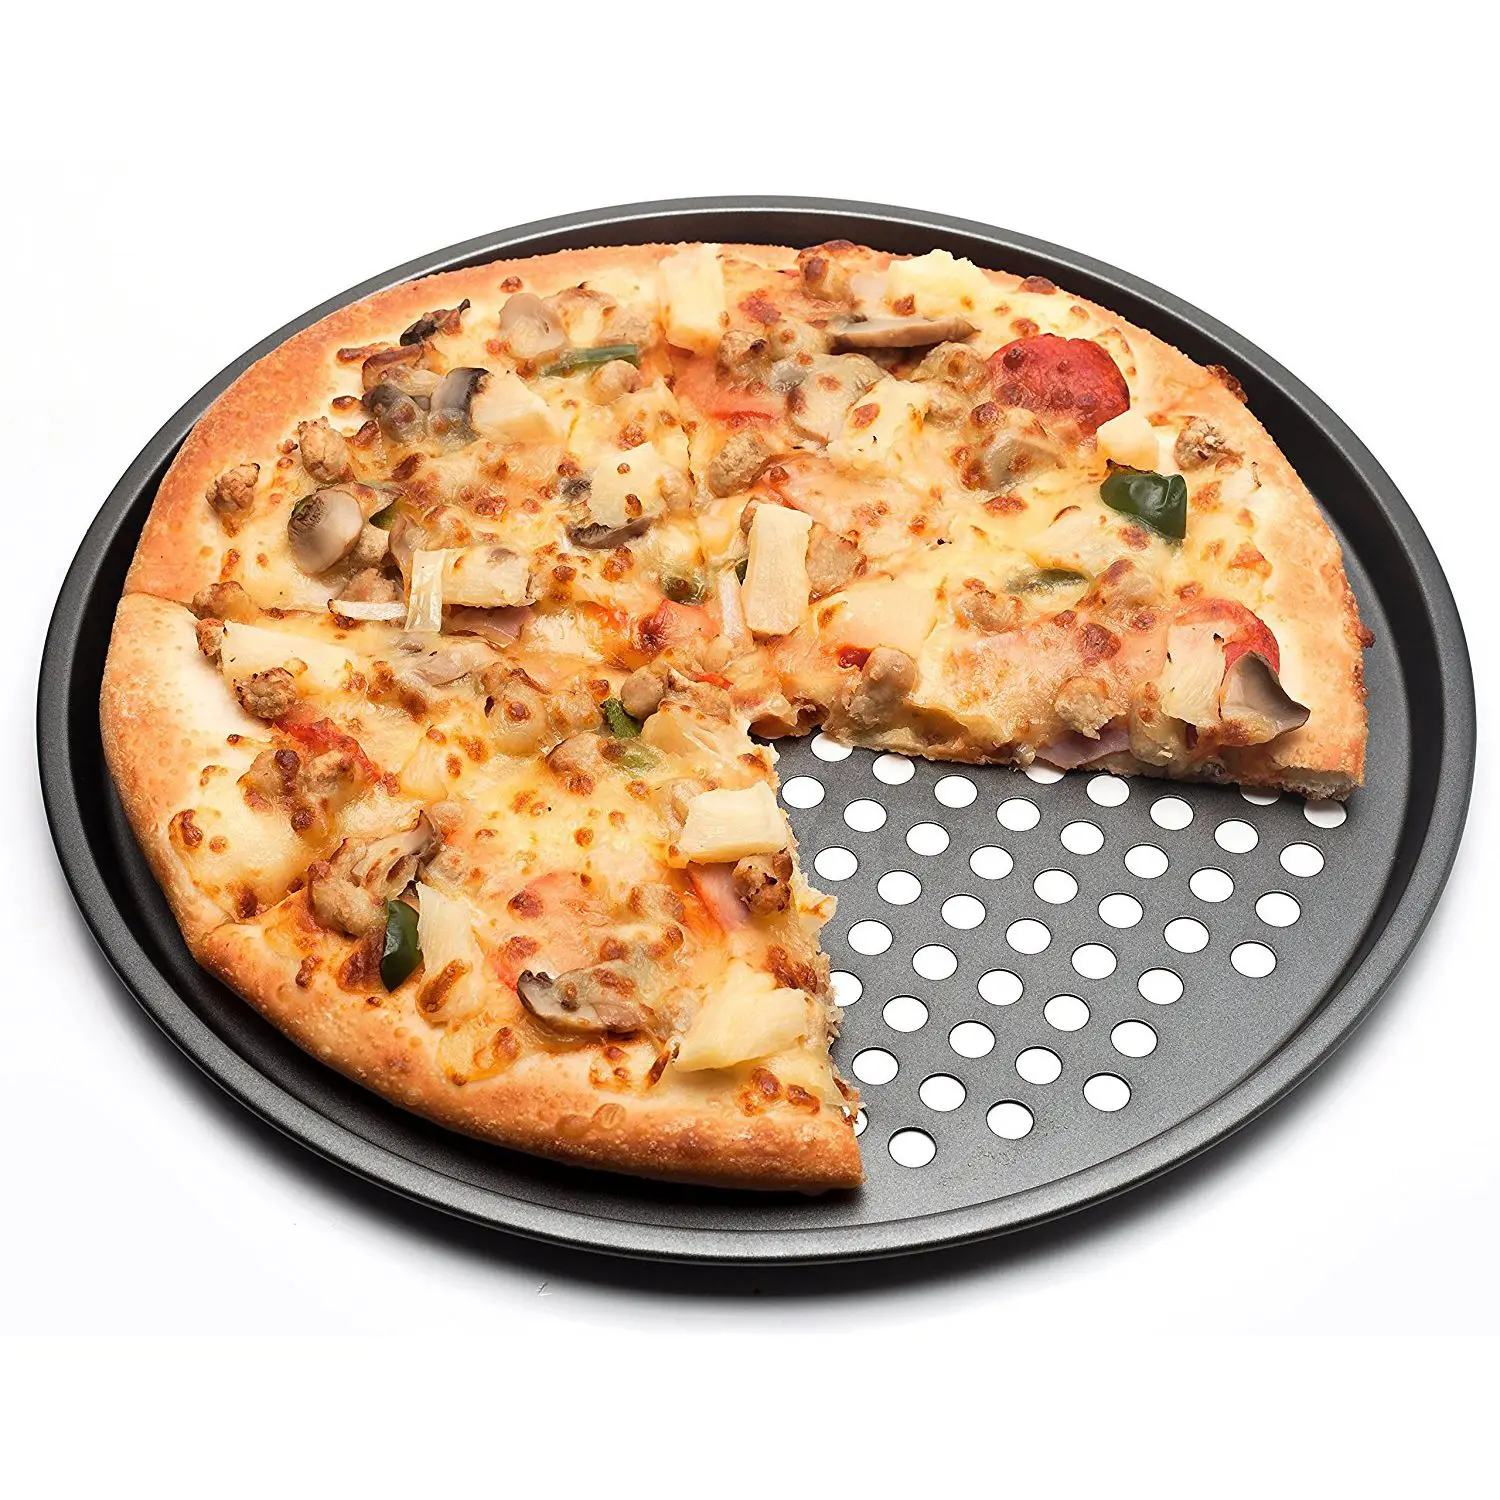 Горячее-углеродистая сталь антипригарная форма для выпечки пиццы Лоток 32 см тарелка для пиццы посуда держатель формы для выпечки Домашняя Кухня Инструменты для выпечки аксессуары - Цвет: Black